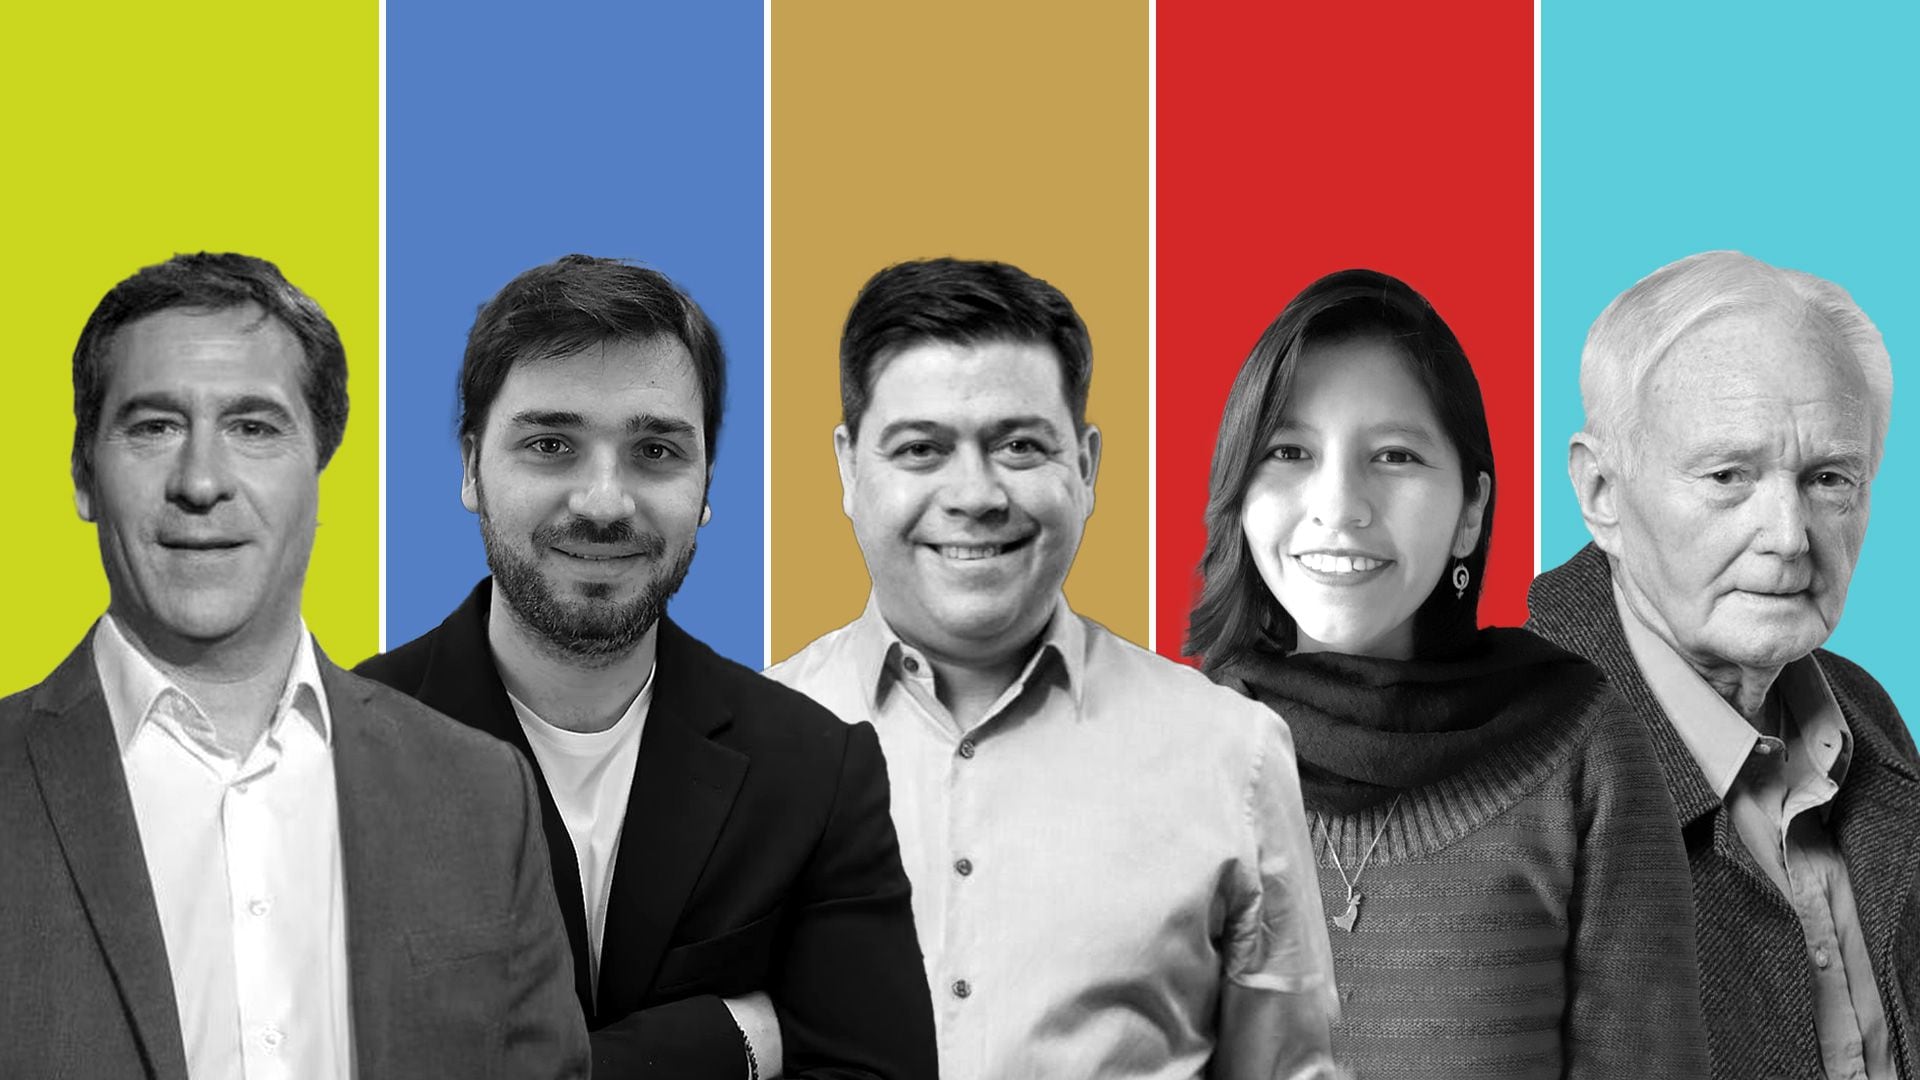 Los candidatos a gobernador en las elecciones en Chubut: Juan Pablo Luque, Ignacio Torres, César Treffinger, Emilse Saavedra, Oscar Petersen.